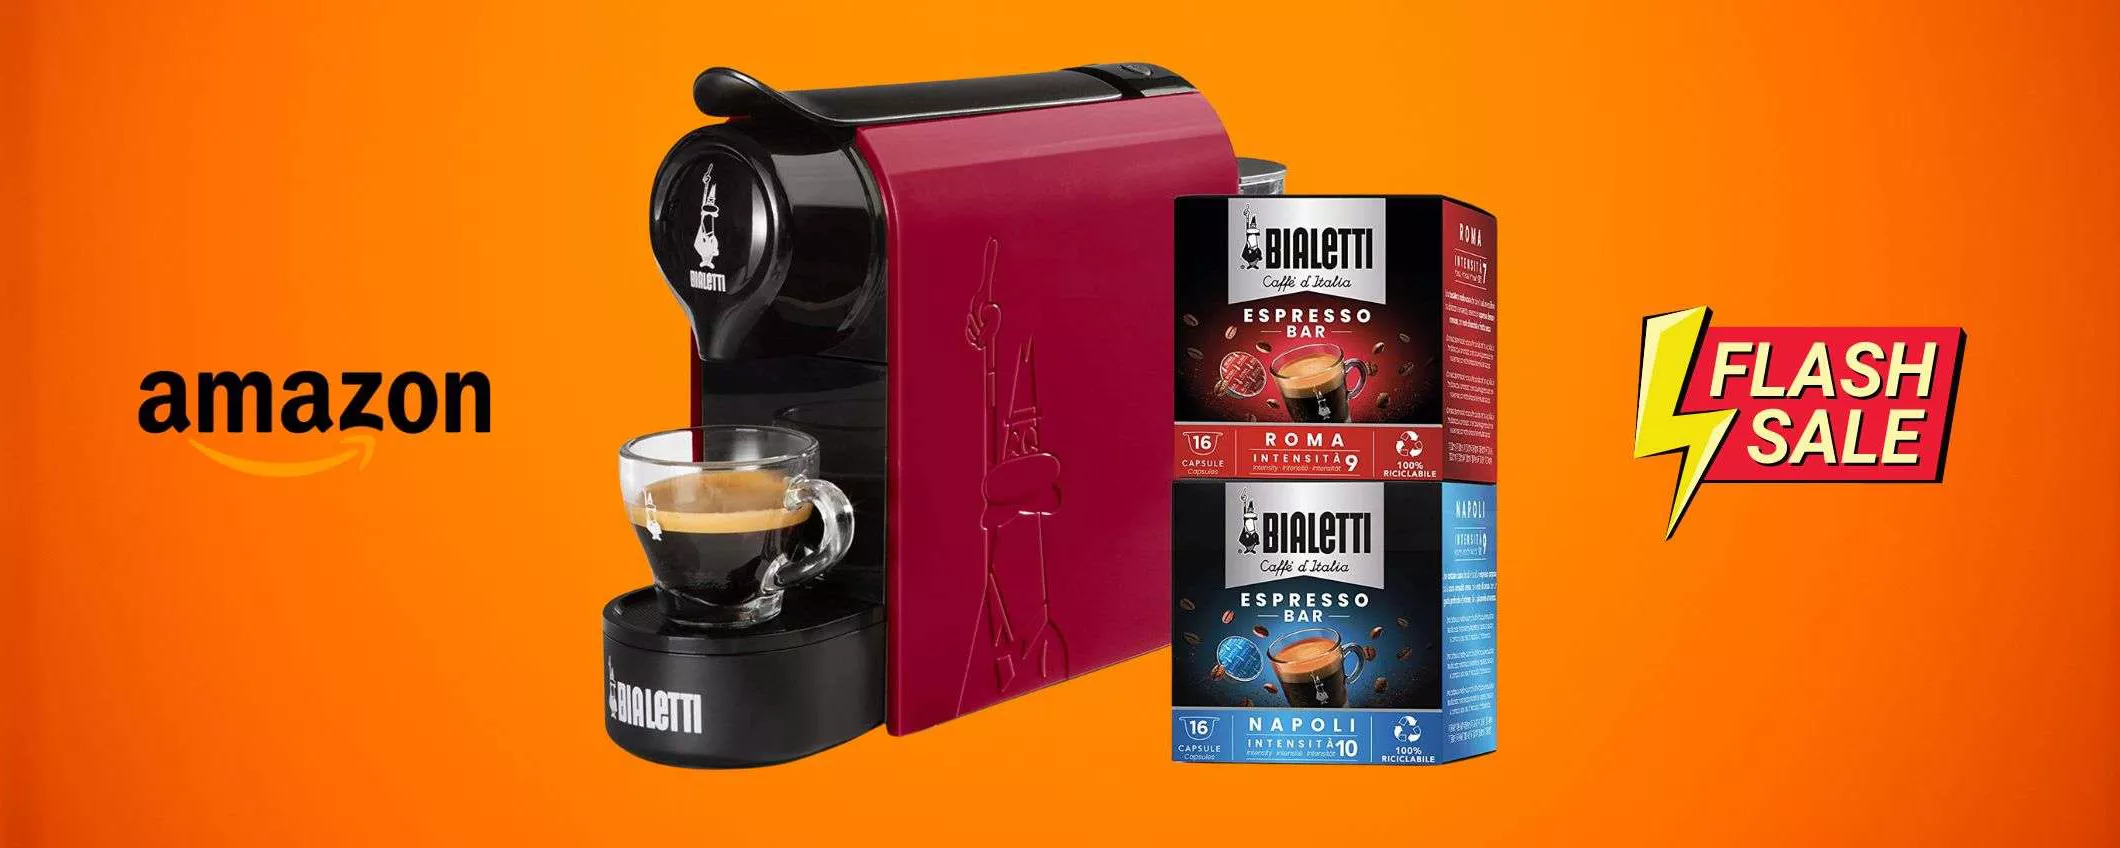 Hubert Hudson experimental Burma Macchina caffè Bialetti: l'espresso a casa tua a meno di 50€ (sconto)